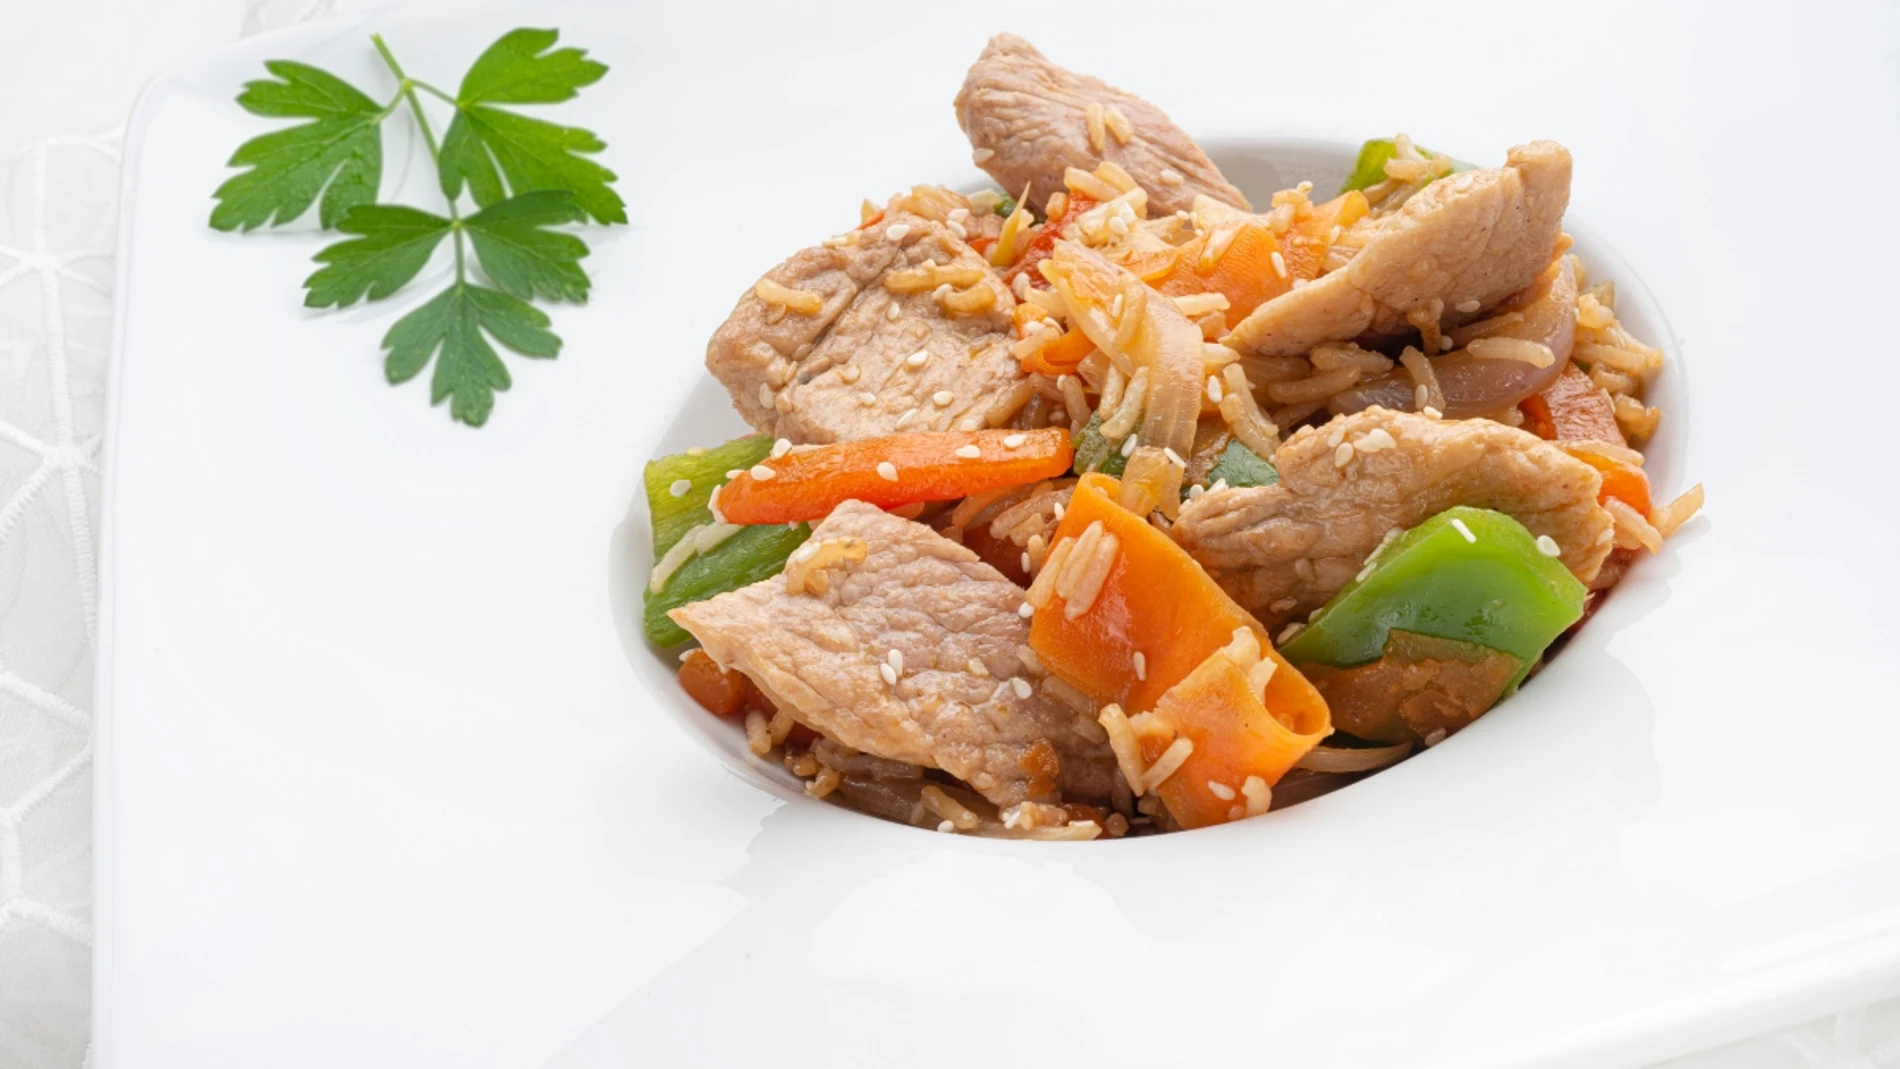 Receta saludable y sabrosa de Karlos Arguiñano: salteado de cerdo y arroz con sésamo